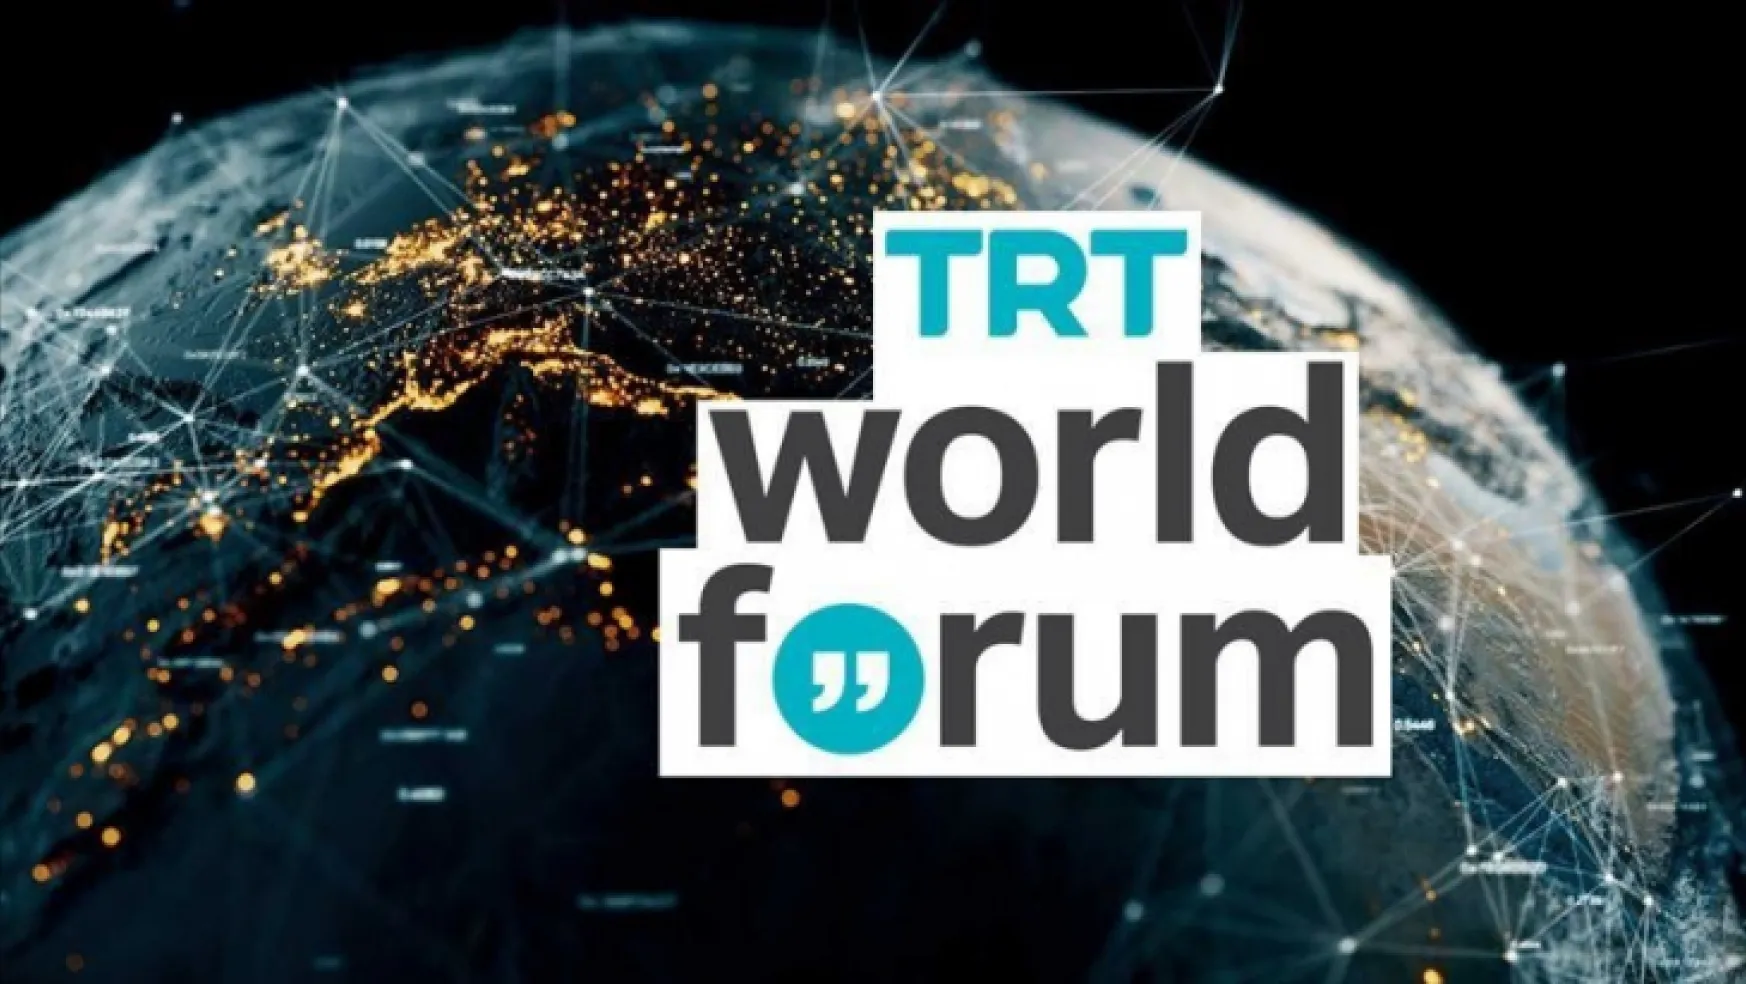 'TRT World Forum 2022'den dünyaya çarpıcı mesajlar